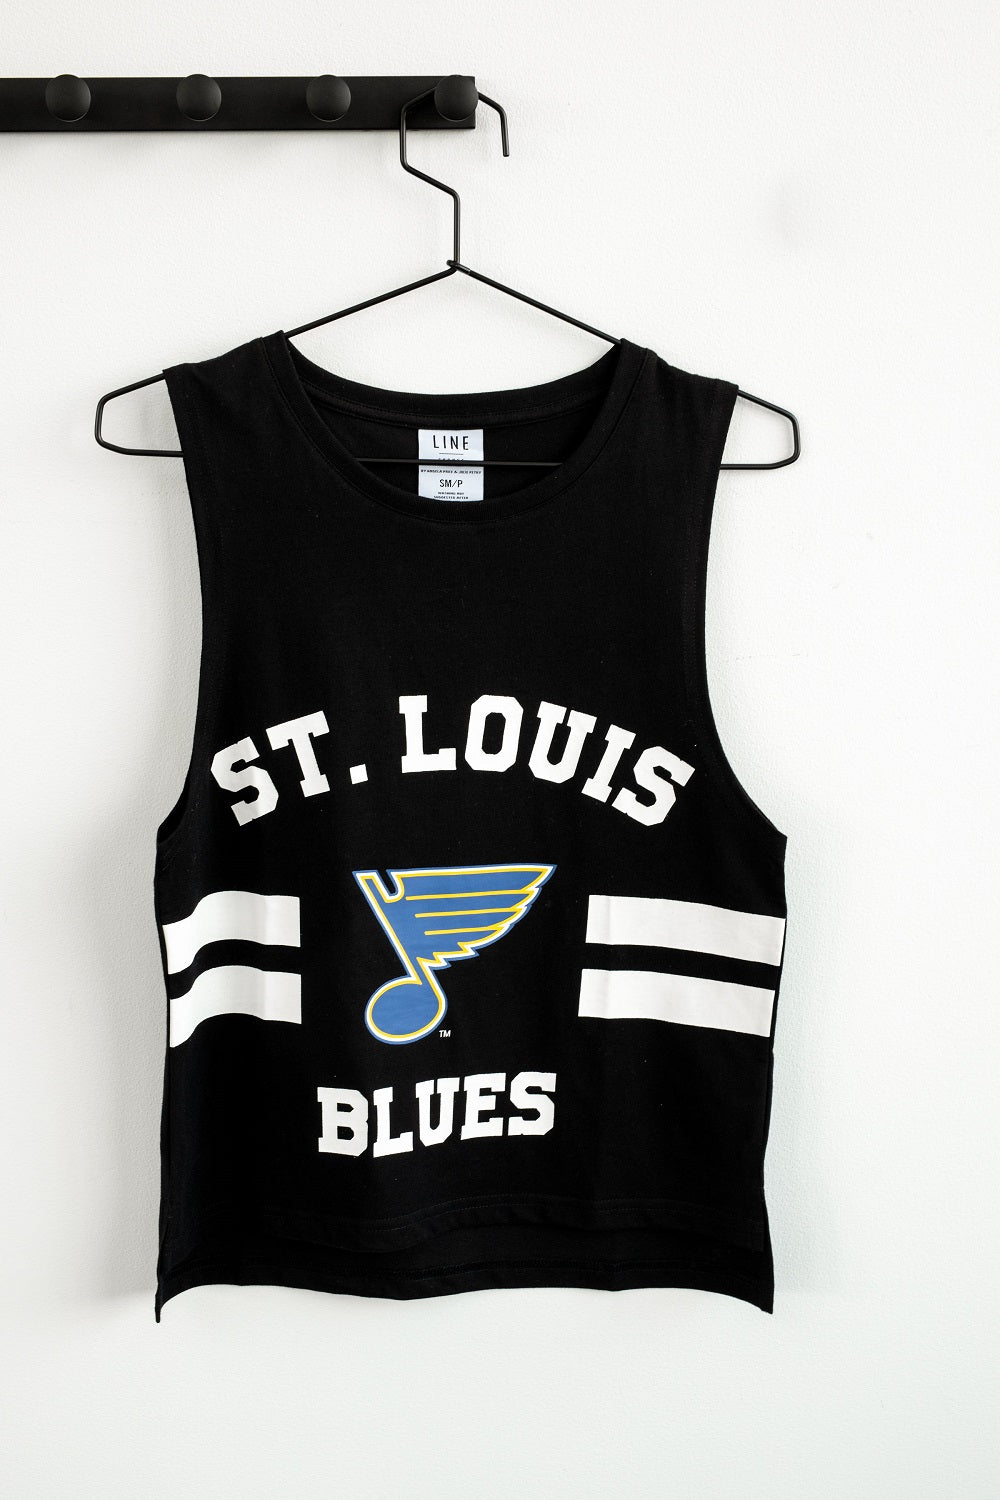 St. Louis Blues Women's Collection — Line Change